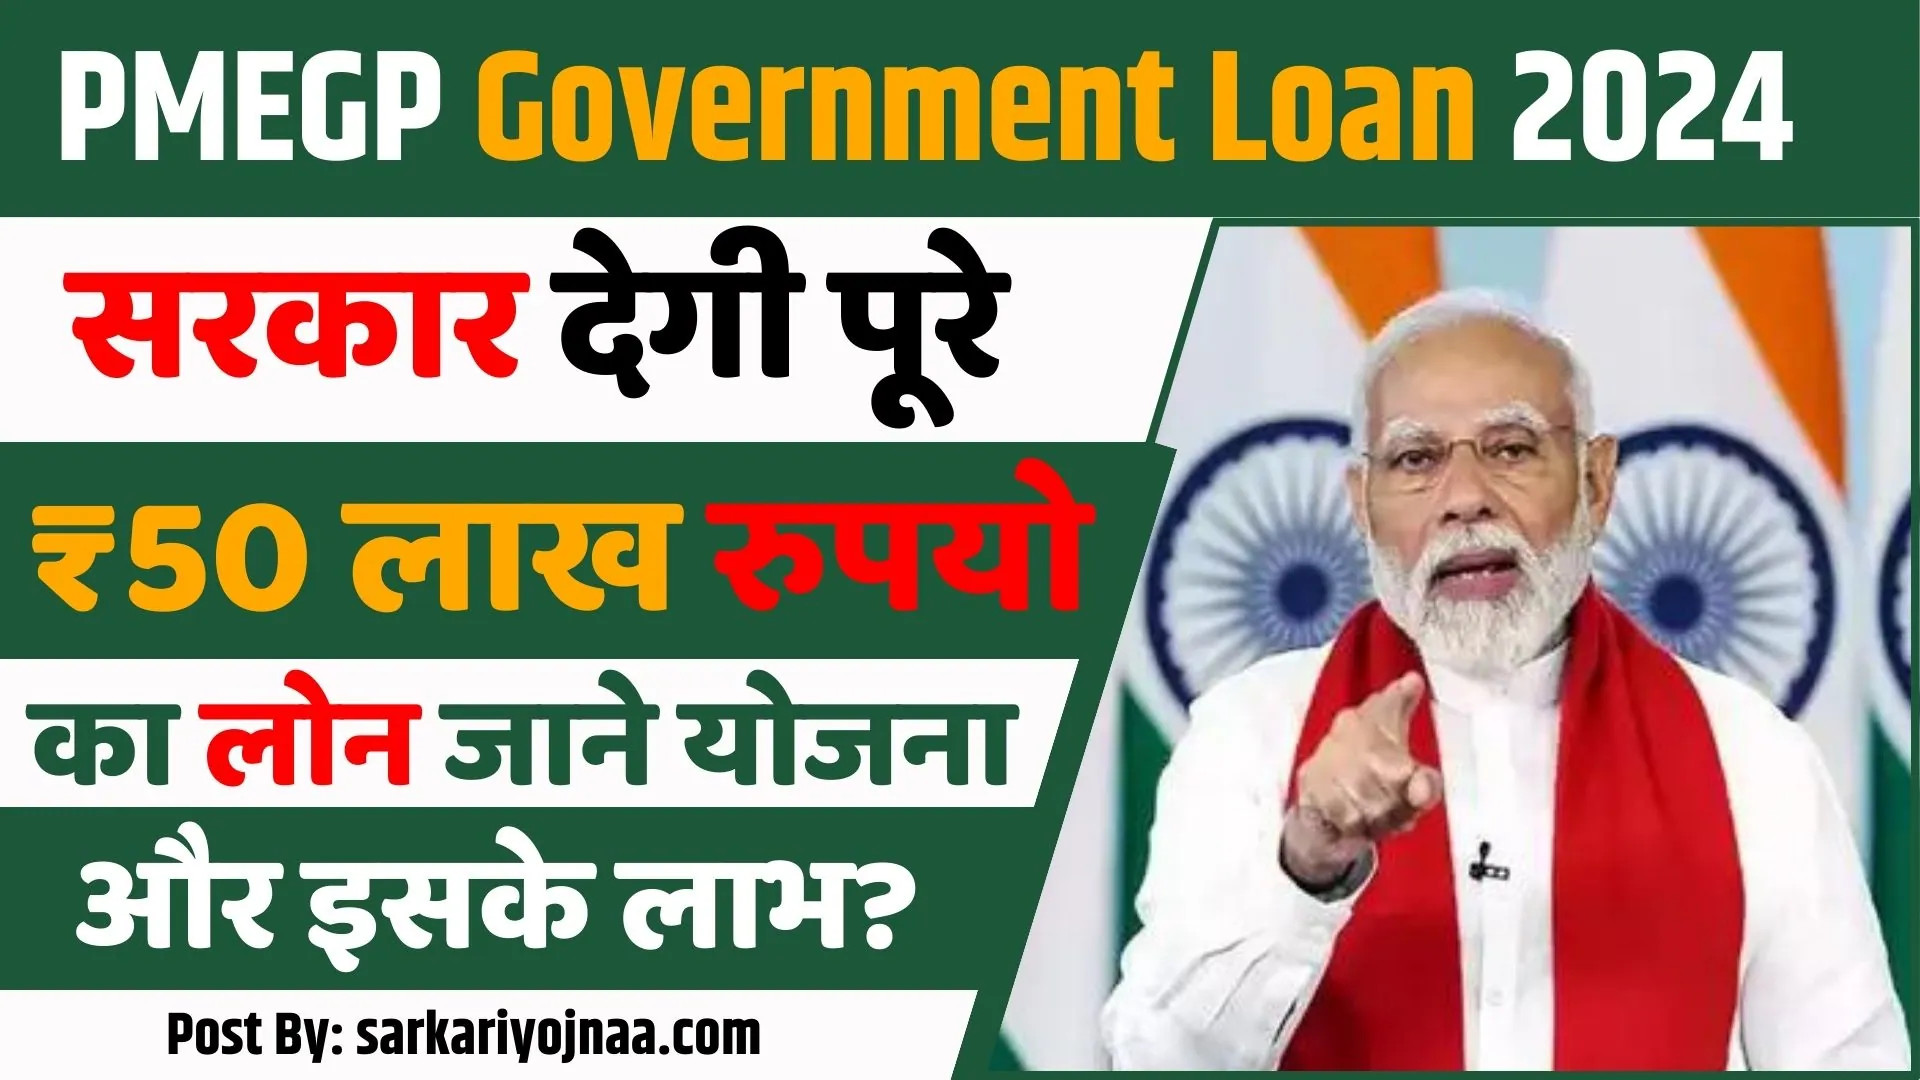 PMEGP Government Loan 2024: ₹30 लाख के लोन पर 10 लाख की छूट, जल्दी से करो आवेदन